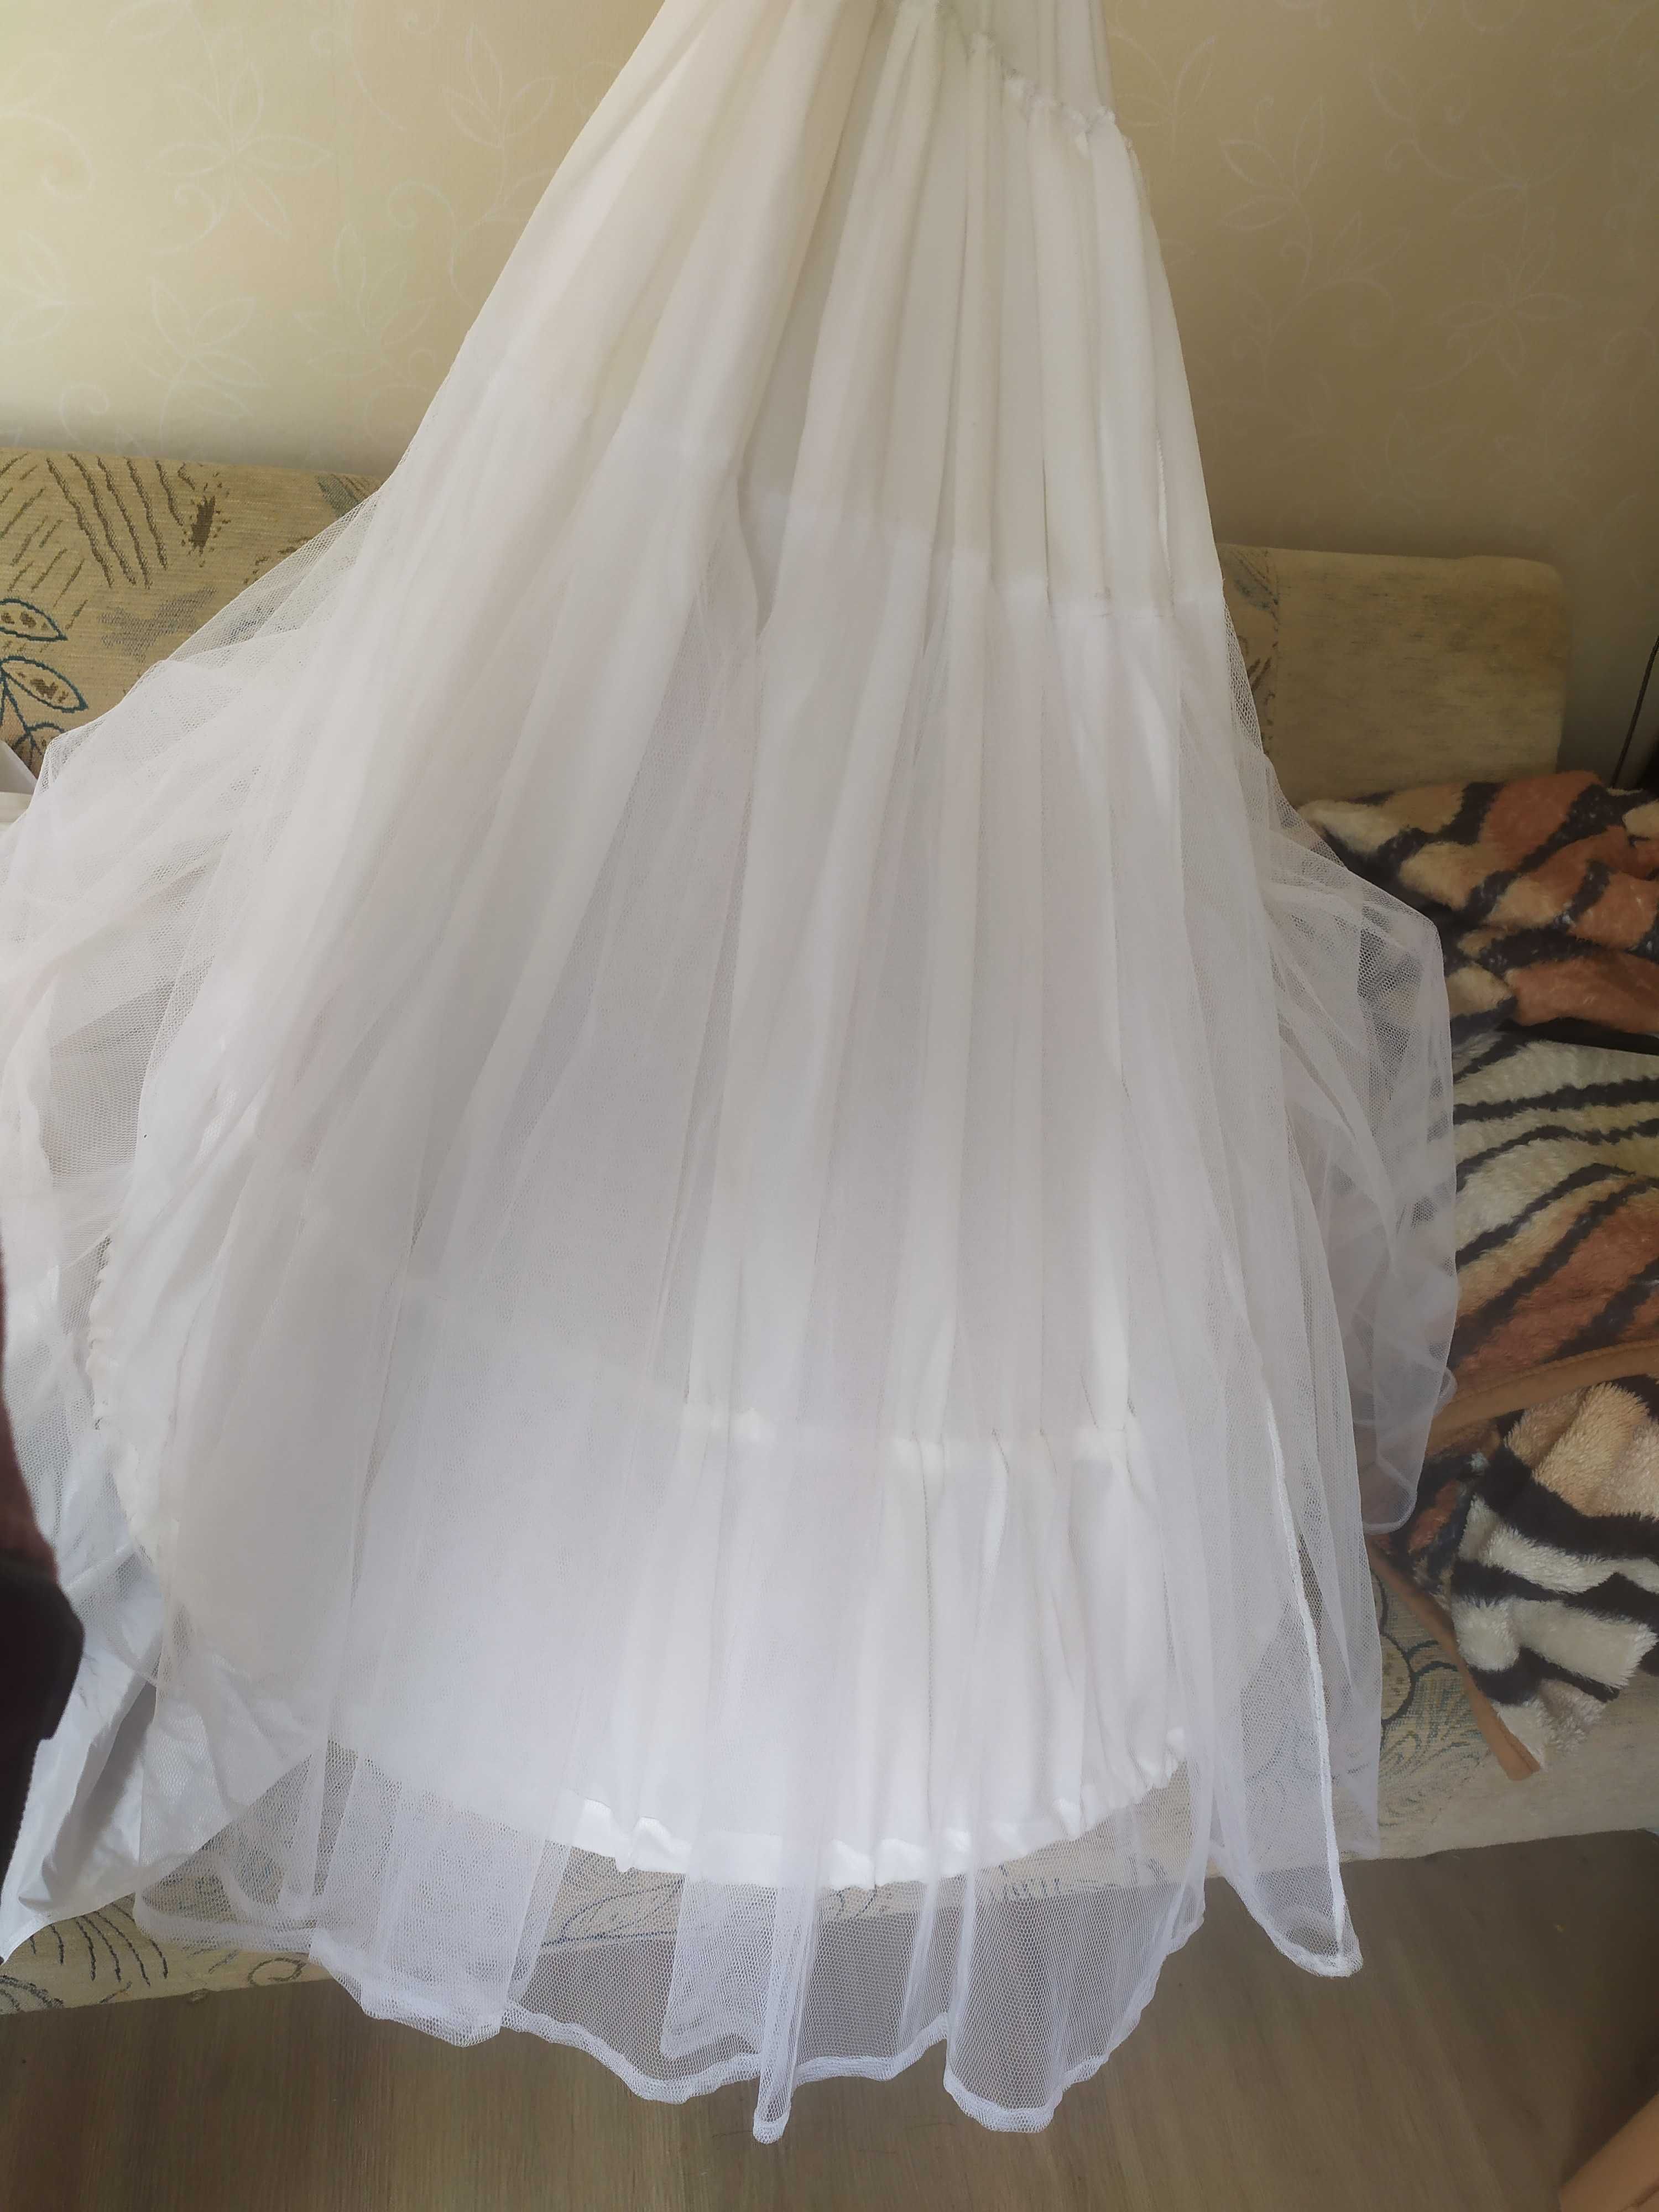 Suknia ślubna wiązana L + koło, bolerko, szarfa i wianek panny młodej